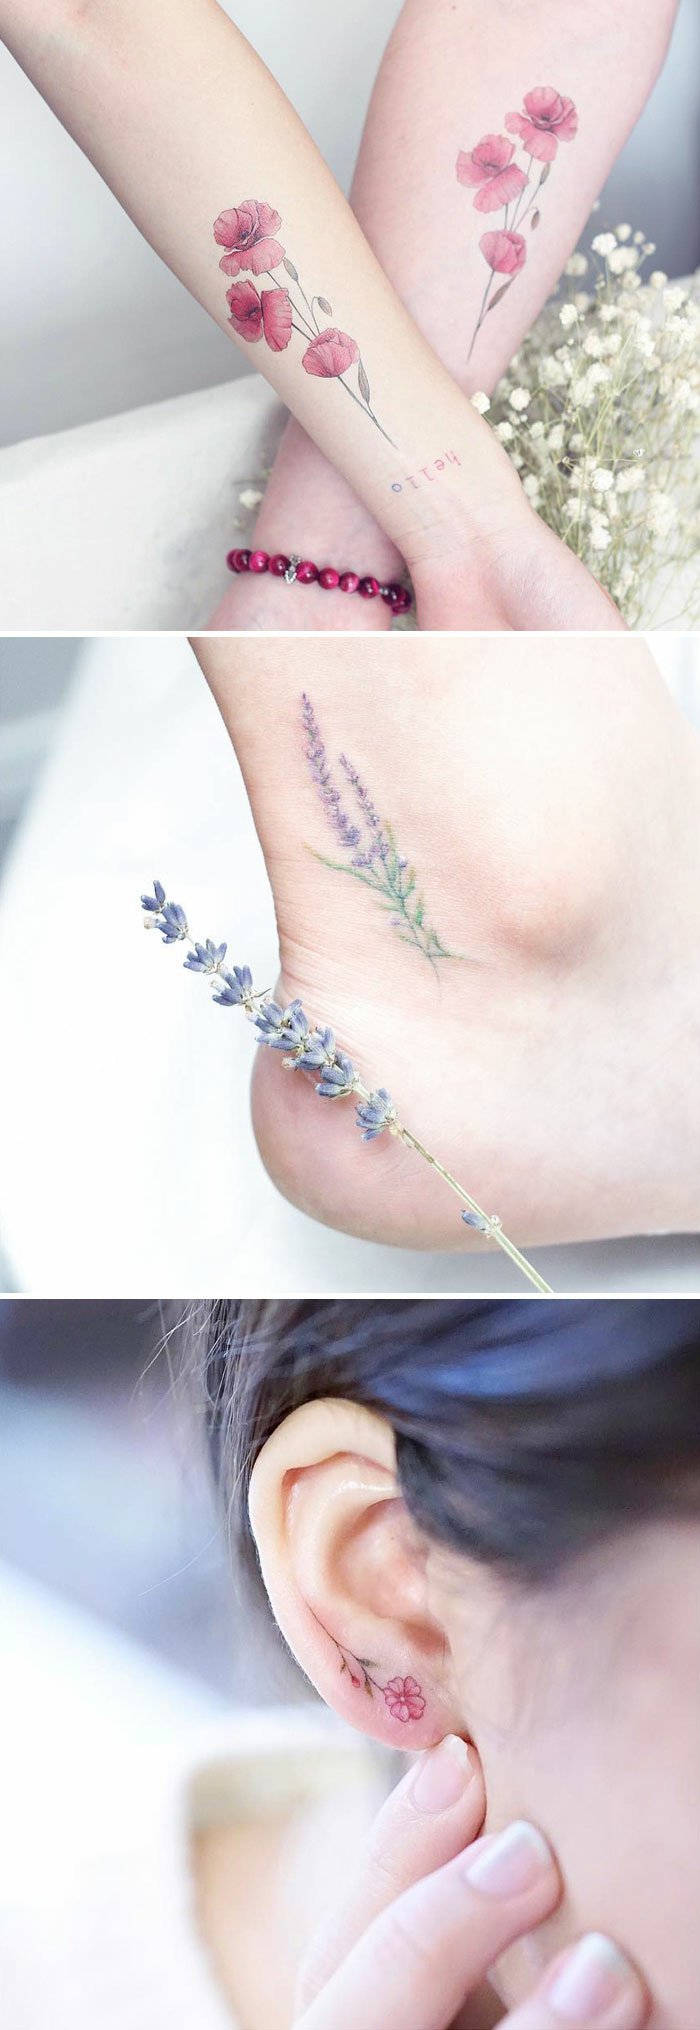 El tatuaje de flor – ¿cómo escoger el diseño y cuál es su significado?